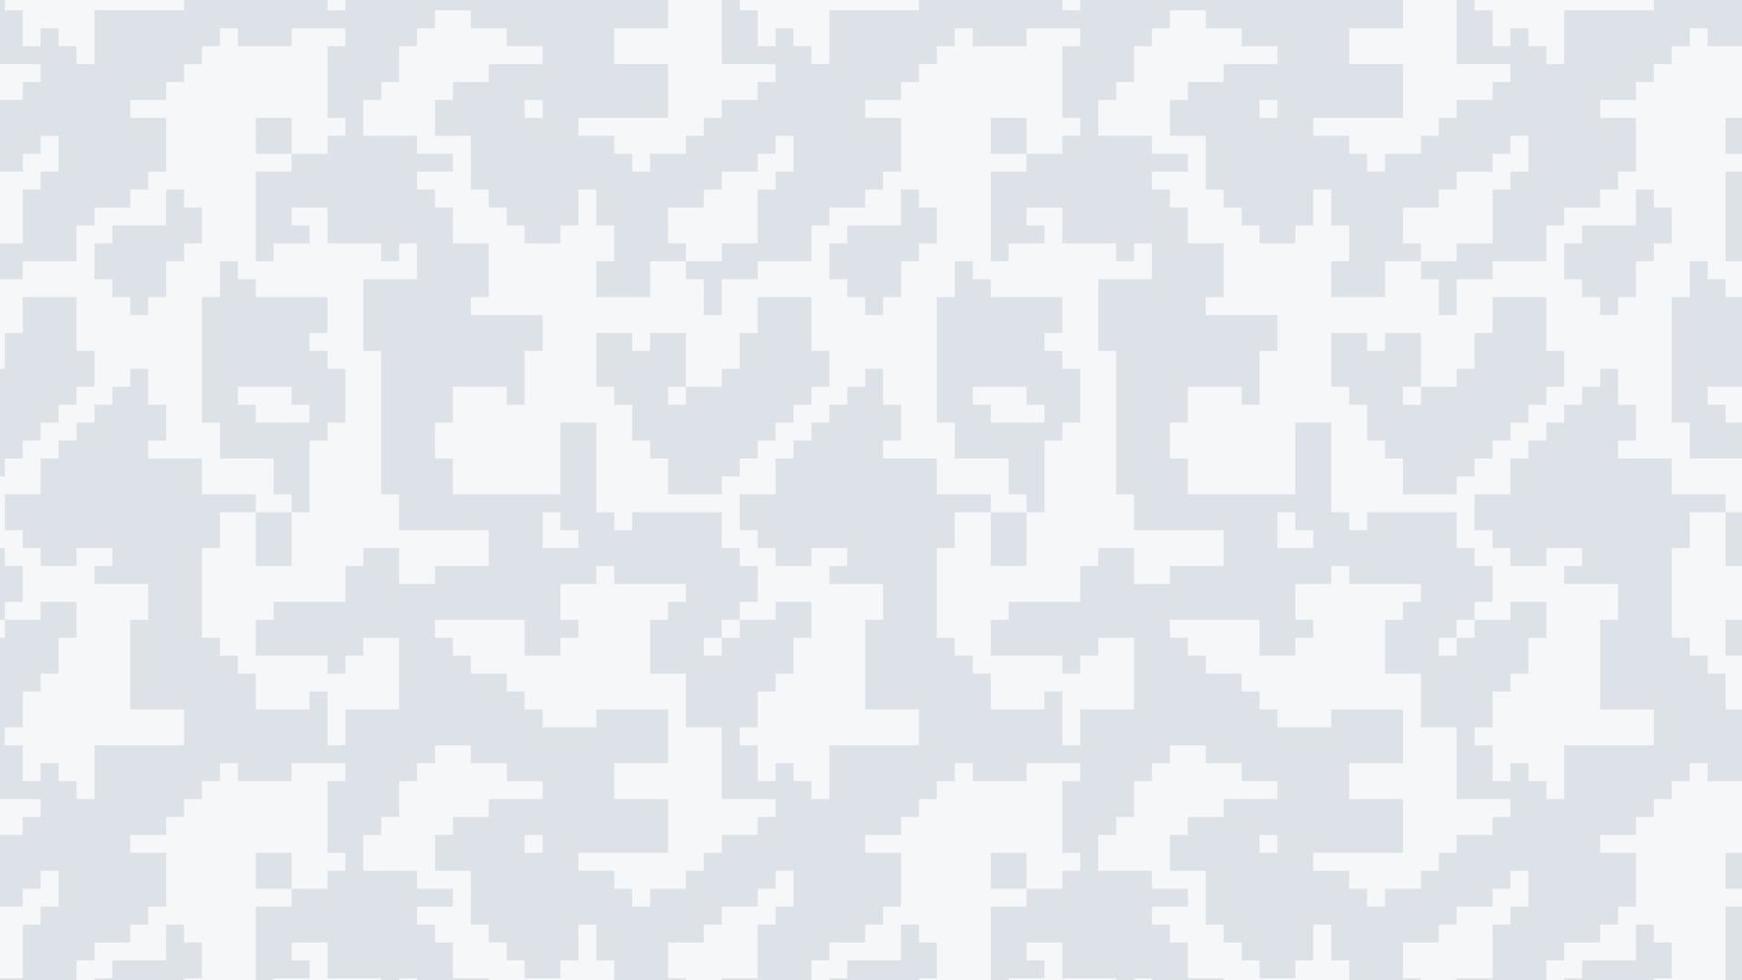 Fundo de camuflagem de pixel militar e militar vetor